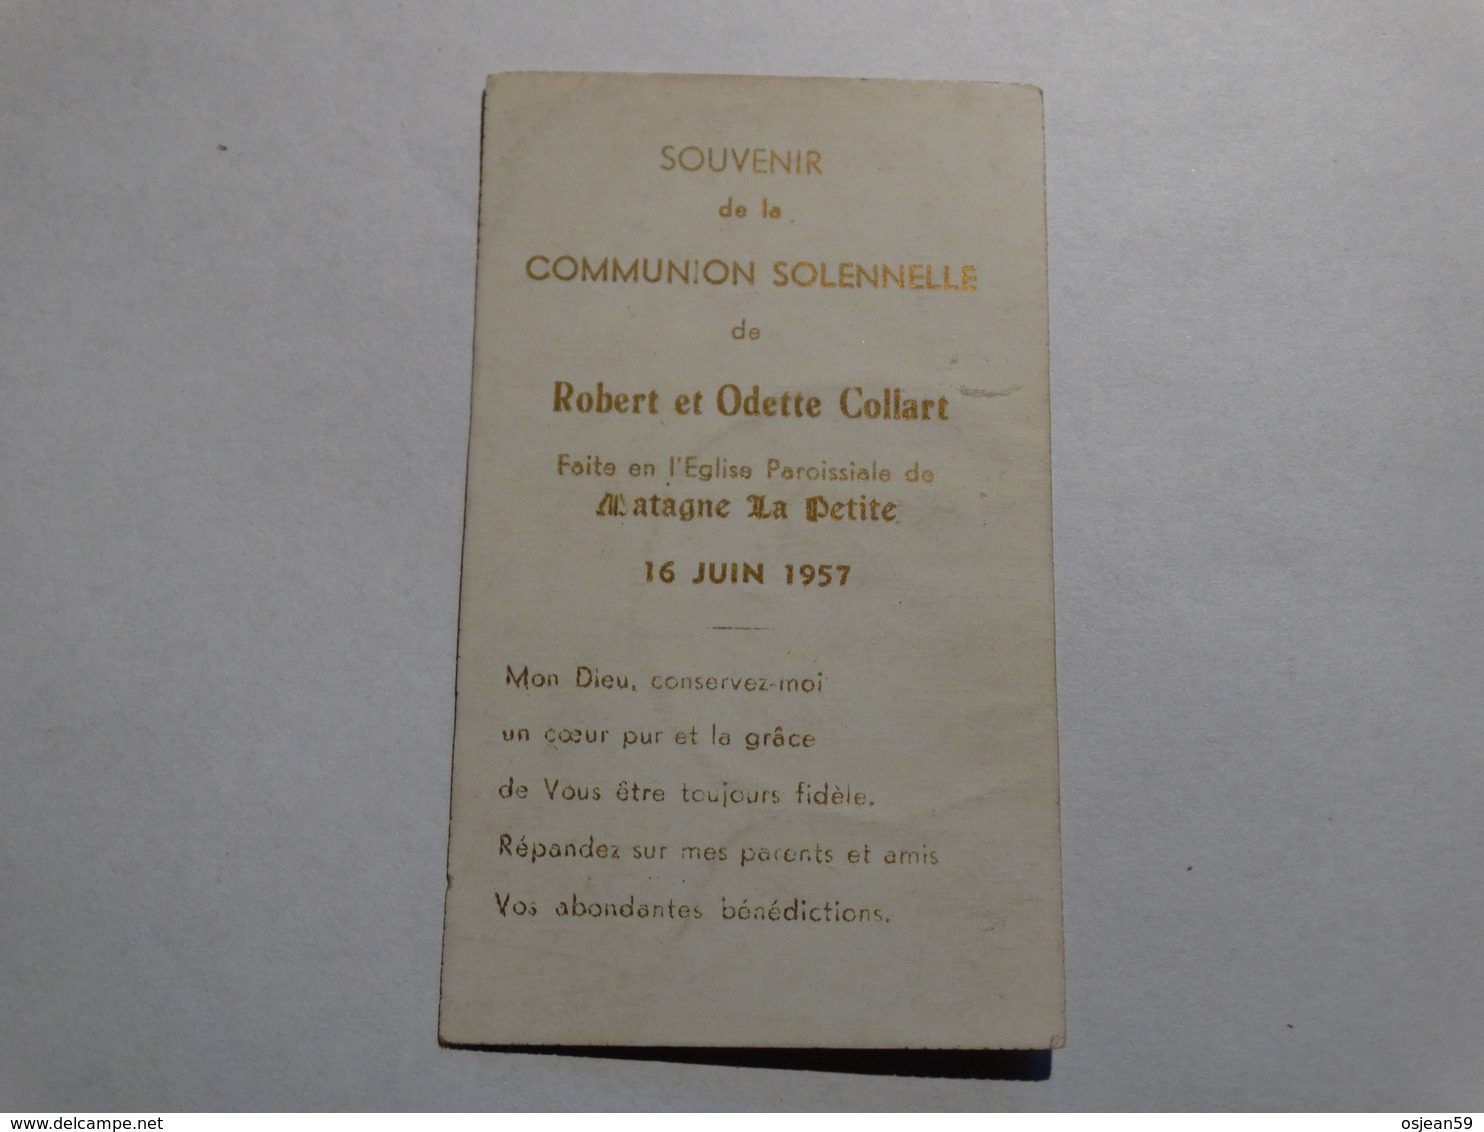 Souvenir De La Communion Solennelle De Robert Et Odette Collart Le 16 Juin 1957 à Matagne-la-Petite (Namur). - Godsdienst & Esoterisme